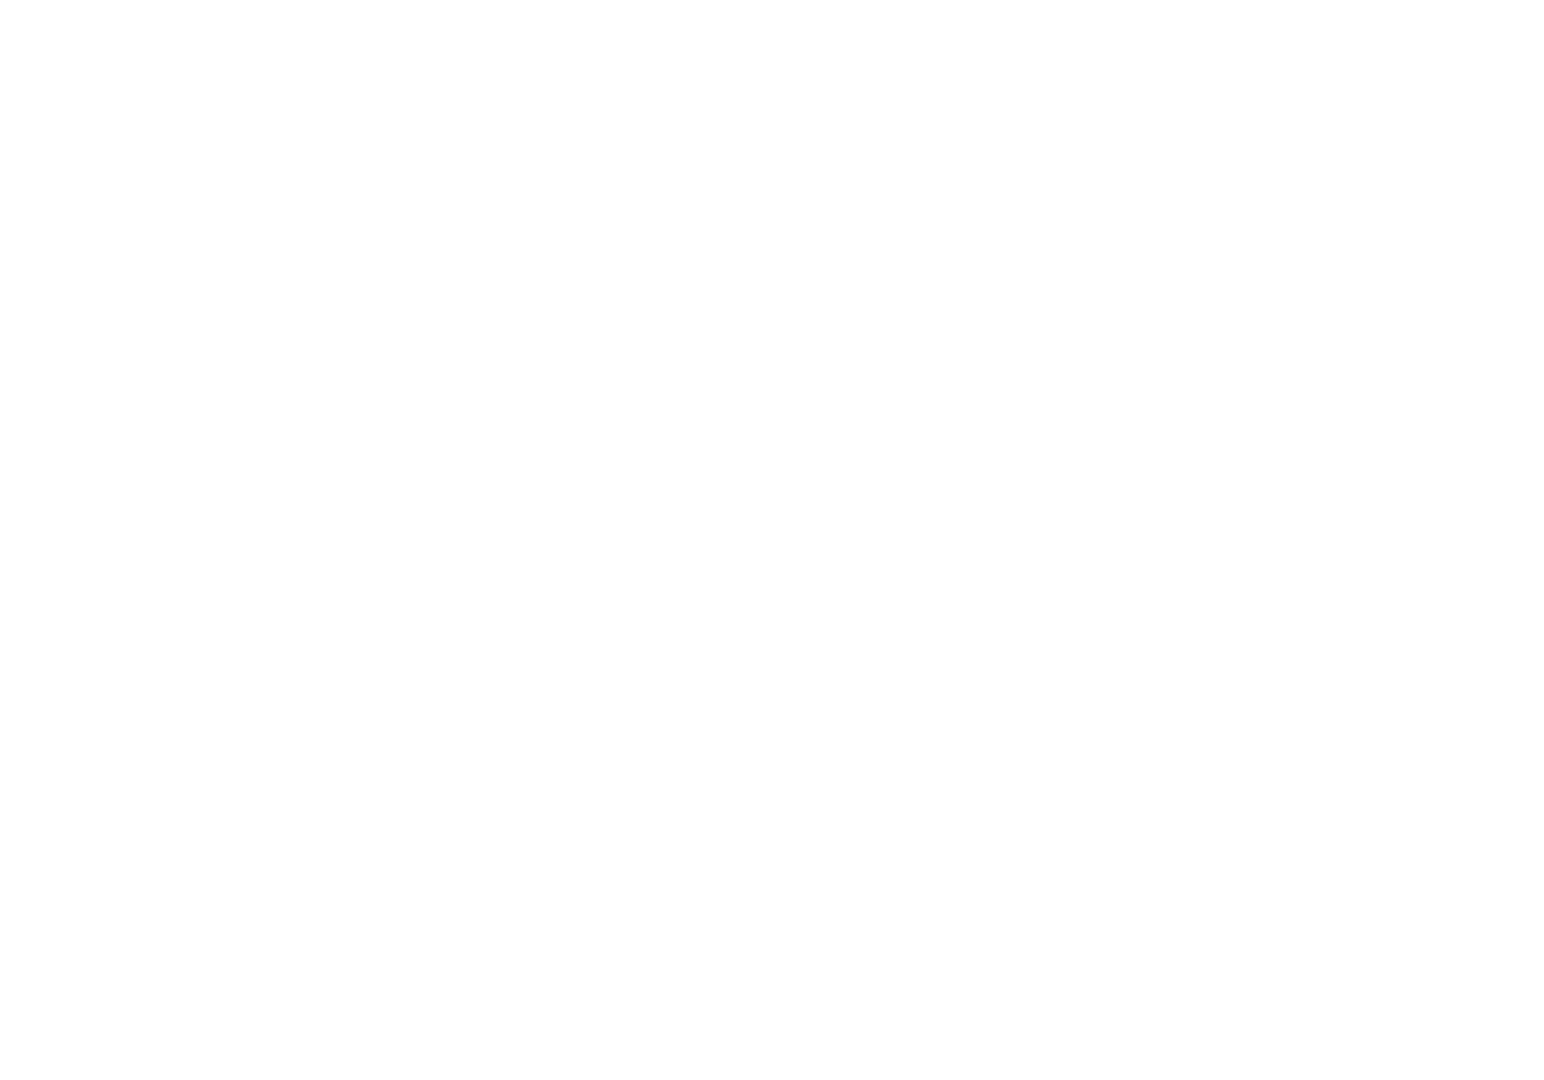 giving season